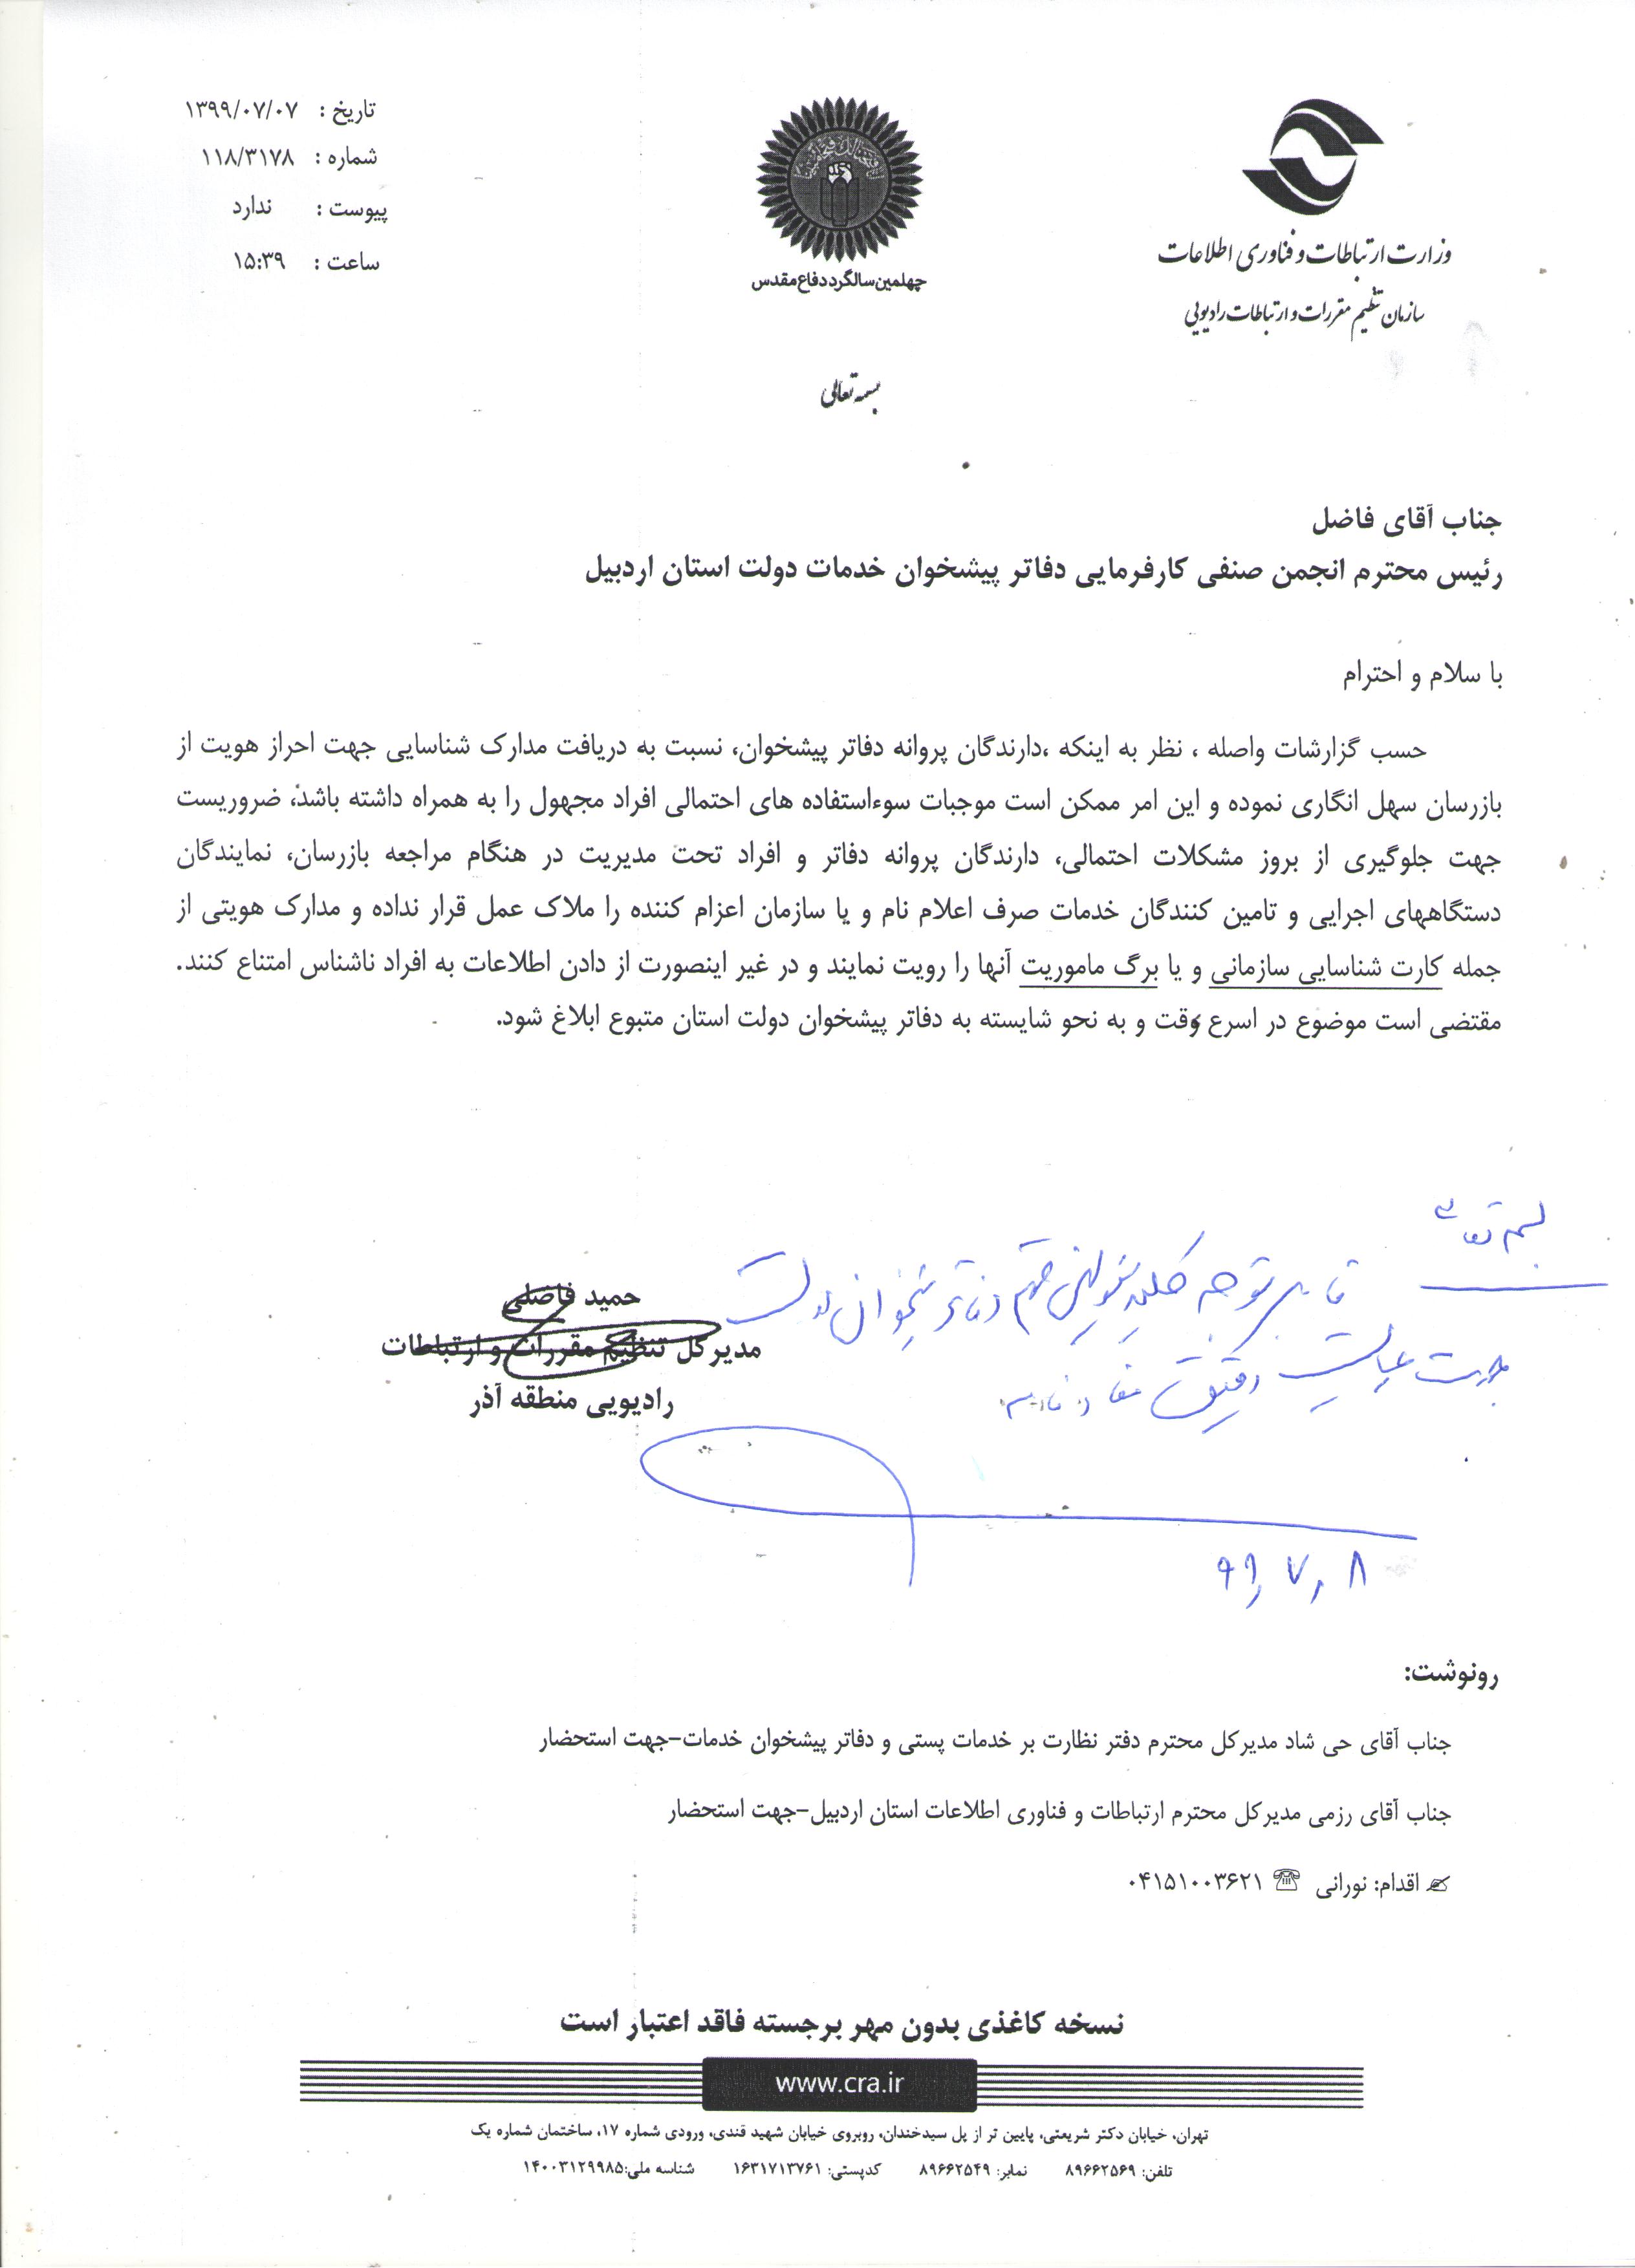 قابل توجه کلیه مسئولین محترم دفاتر پیشخوان دولت اردبیل – جهت رعایت دقیق مفاد نامه